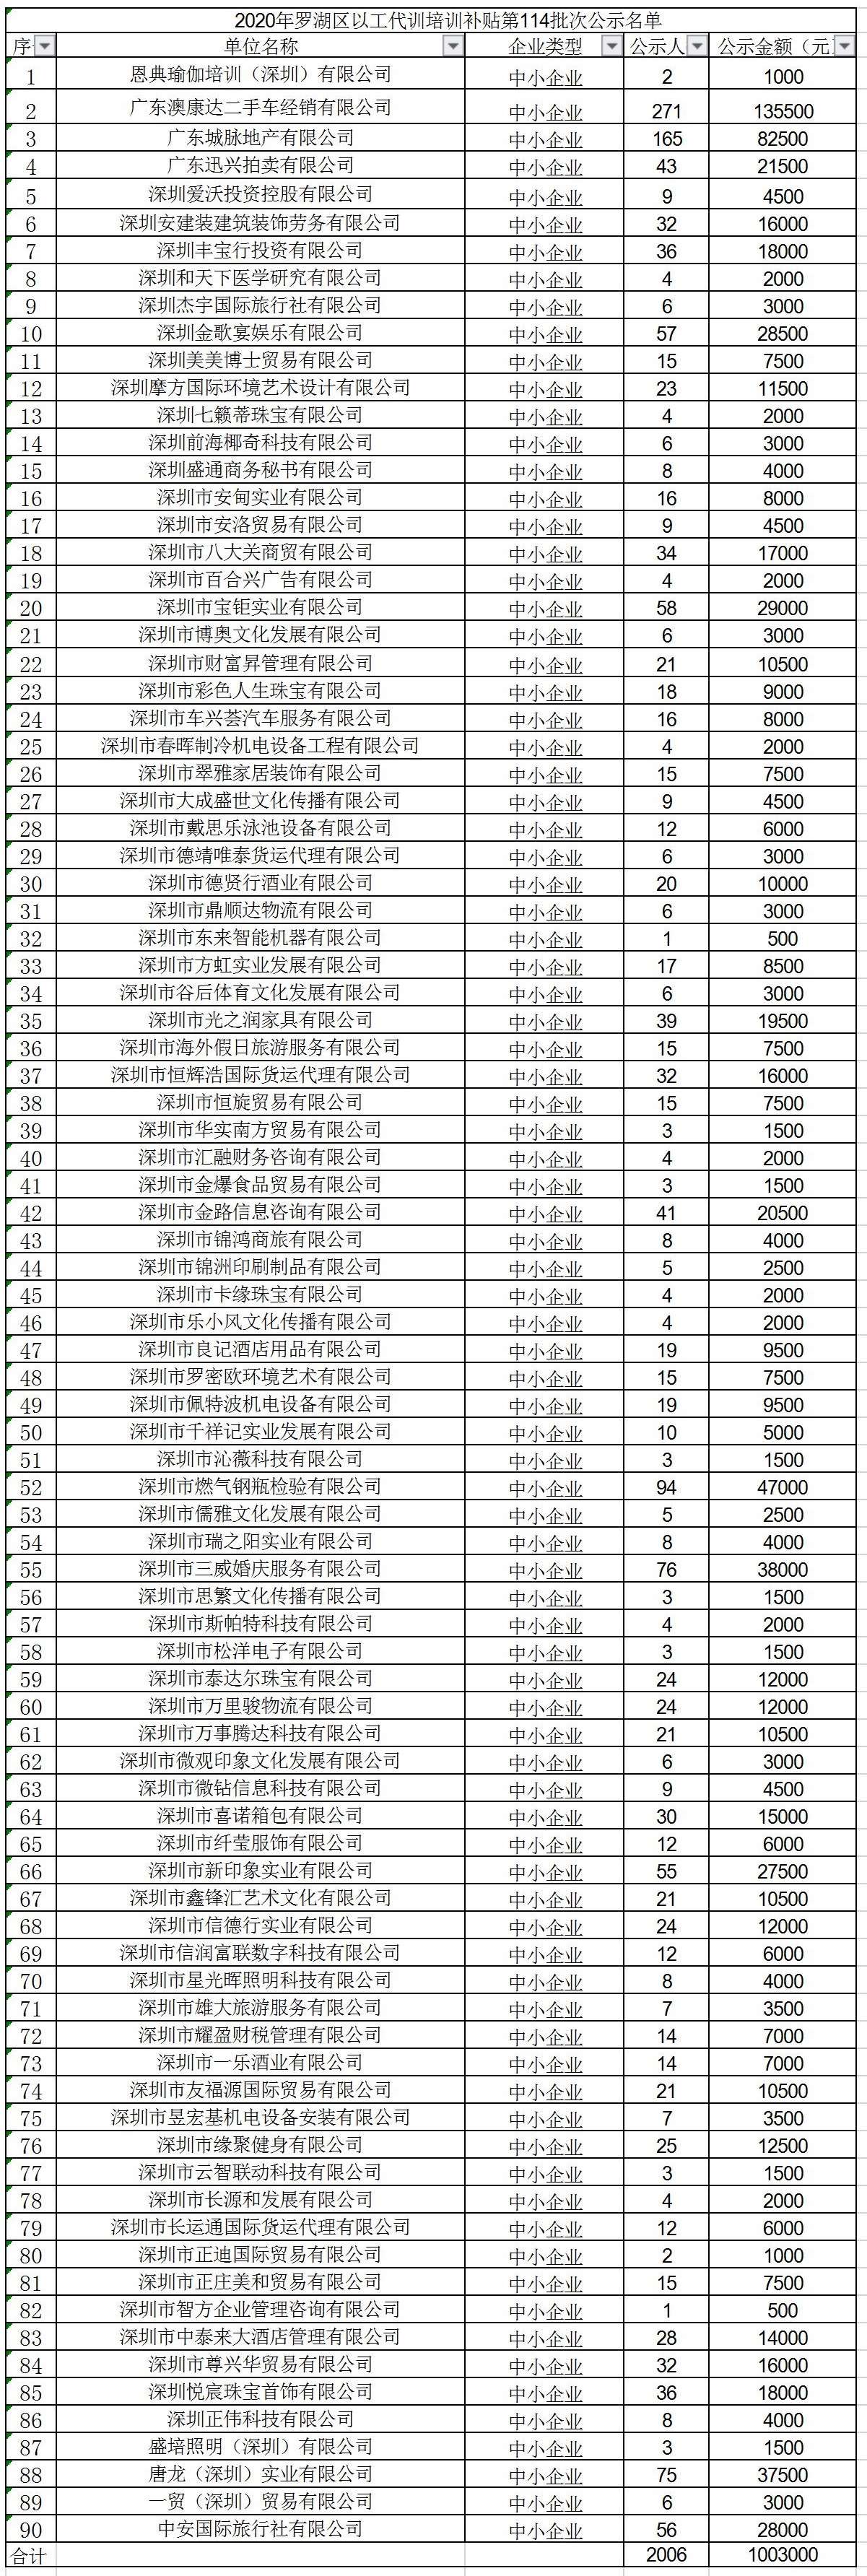 2020年深圳市罗湖区以工代训培训补贴第114批次公示名单.jpg